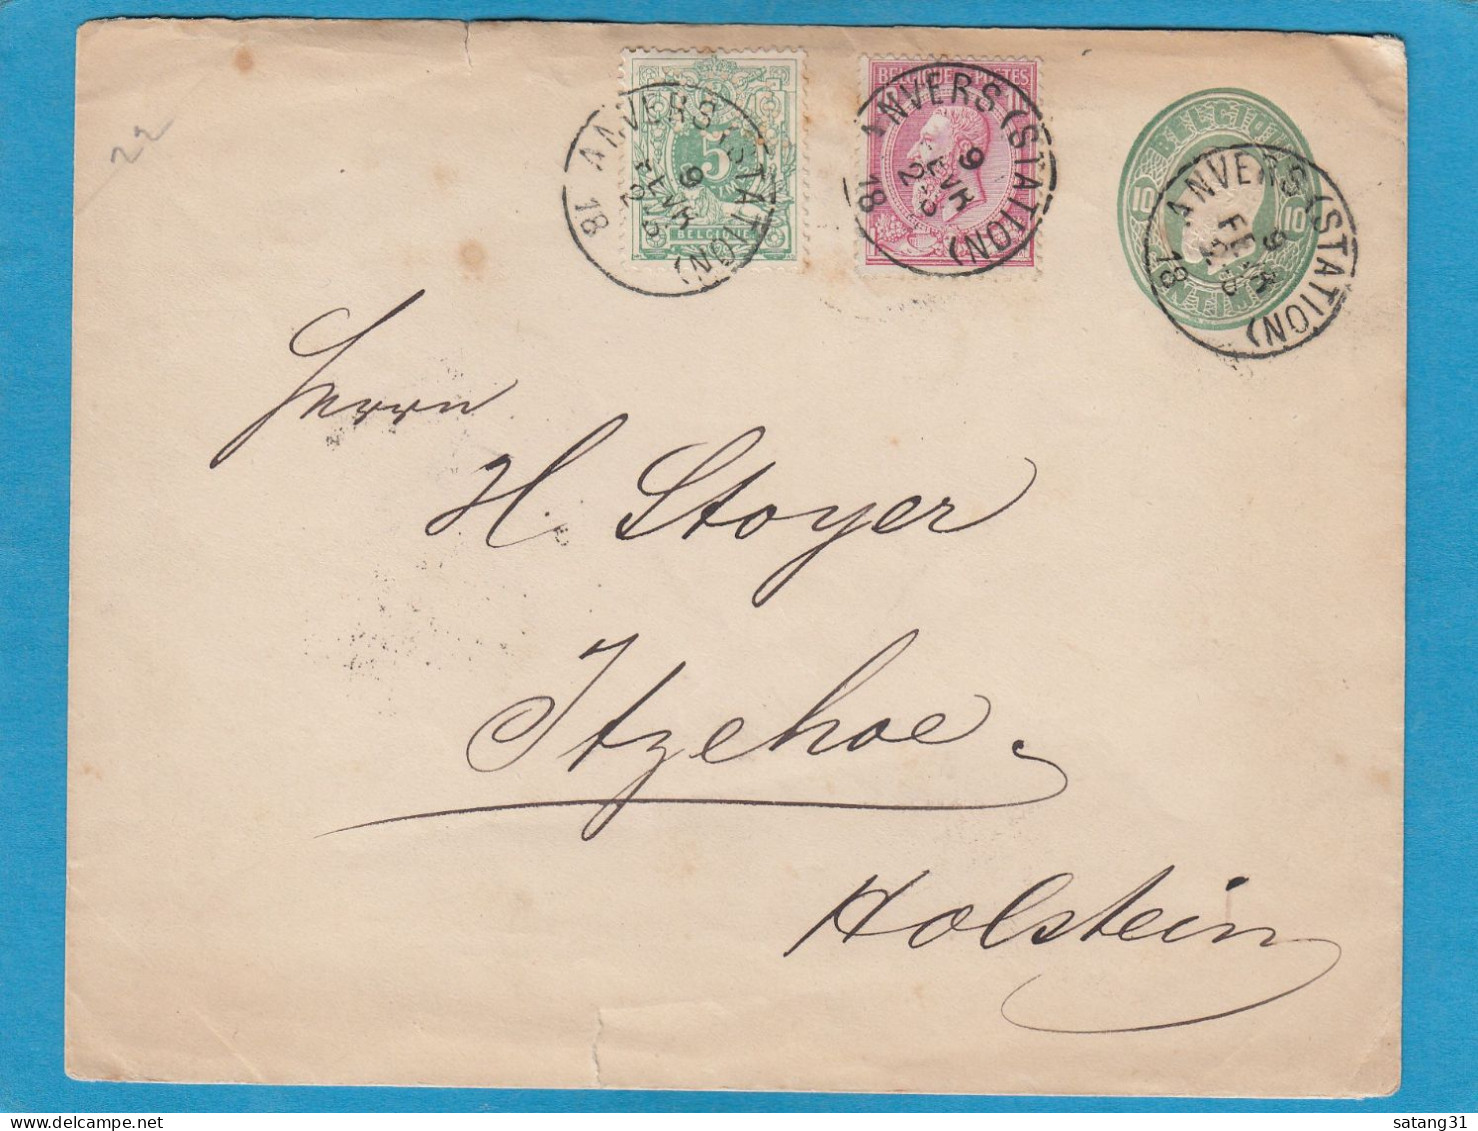 ENTIER POSTAL AVEC AFFRANCHISSEMENT COMPLEMENTAIRE D'ANVERS POUR ITZEHOE,1889. - Cartes Postales 1951-..